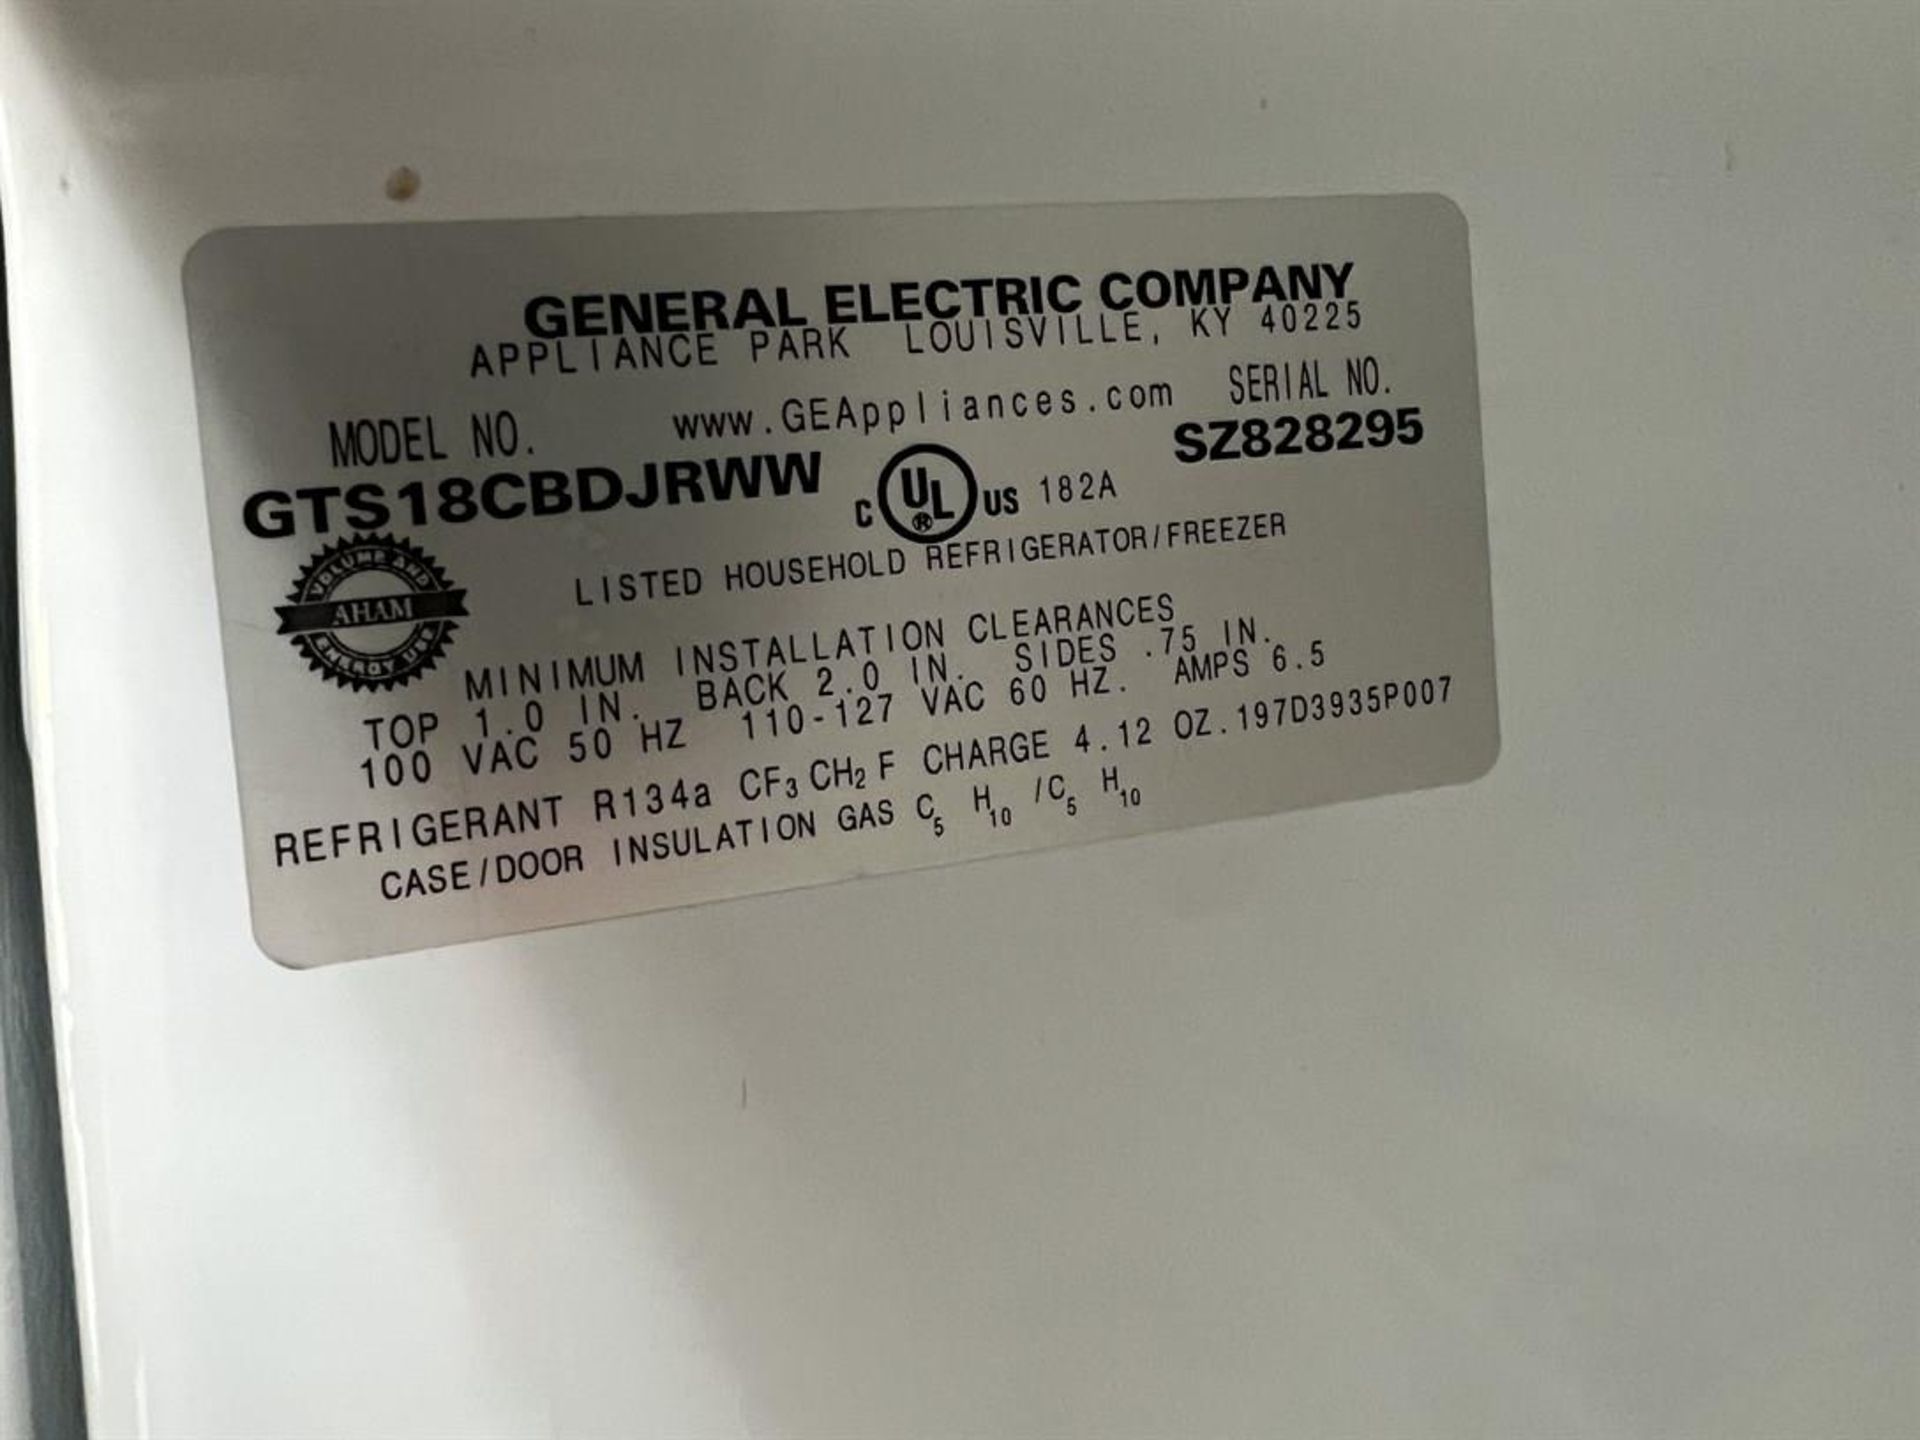 GE GTS18CBDJRWW Refrigerator/Freezer, s/n SZ828295 - Image 3 of 3